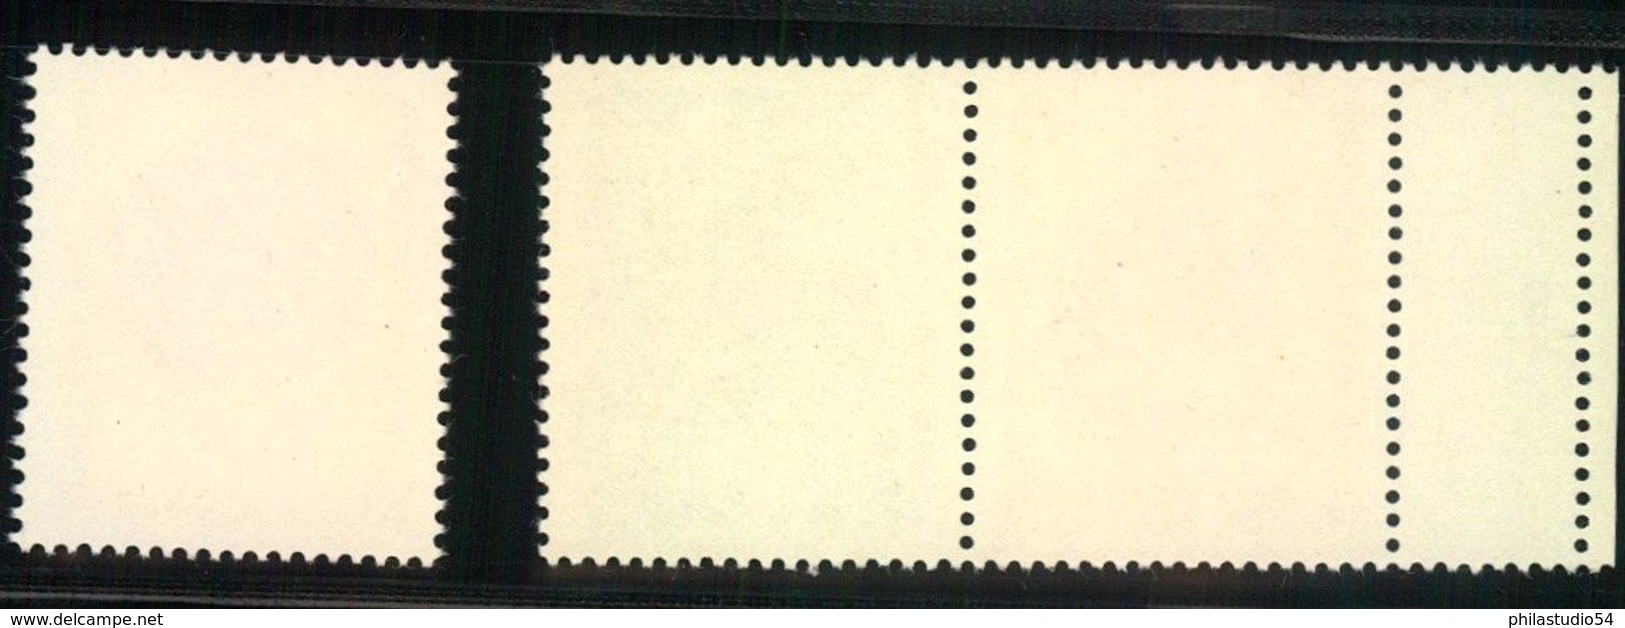 1969, Lausitzer Volkskunst, Zdr 10 Und 50 Pfg. Postfrisch Mit Leefeld Links Und 20 Pfg.Einzelmarke - Ungebraucht